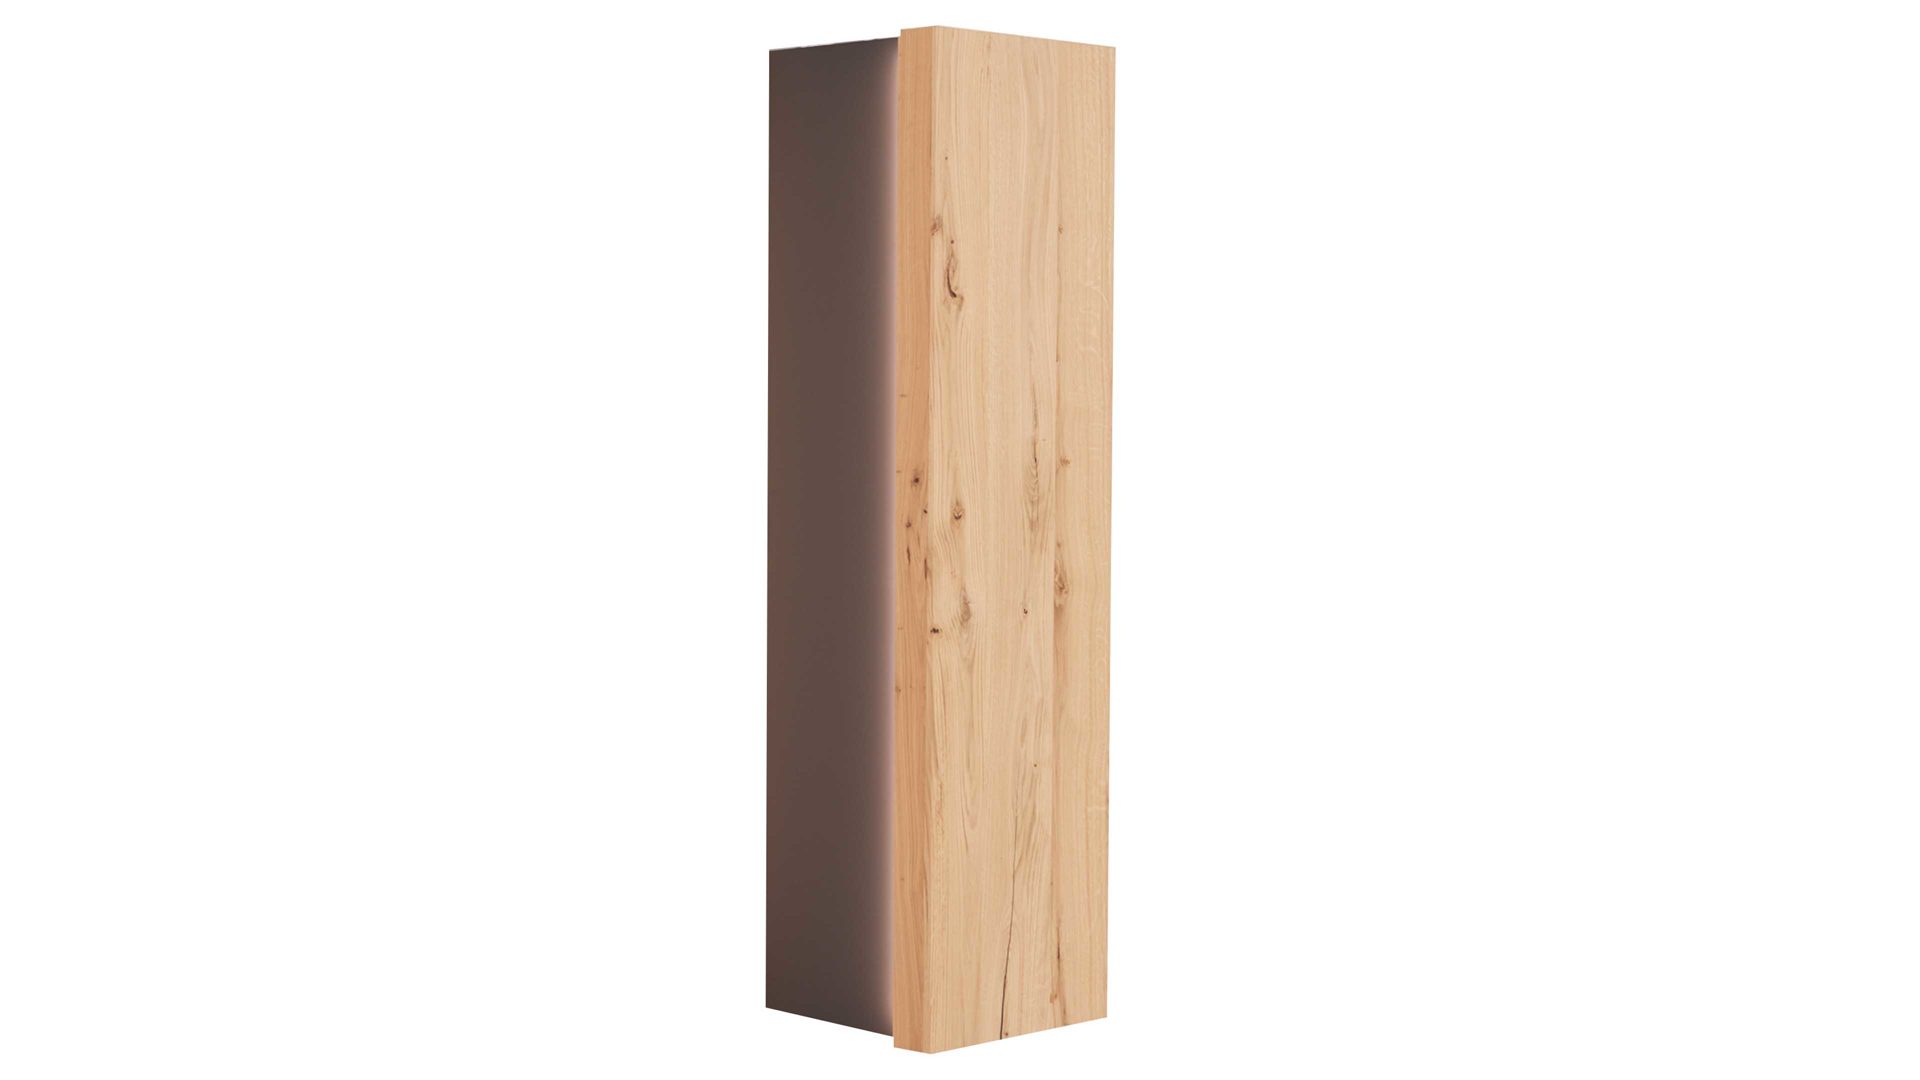 Hängeschrank Interliving aus Holz in Schwarz Interliving Wohnzimmer Serie 2103 – Hängeelement 560746 Schiefer Schwarz & Asteiche – eine rechte Tür, Höhe ca. 151 cm